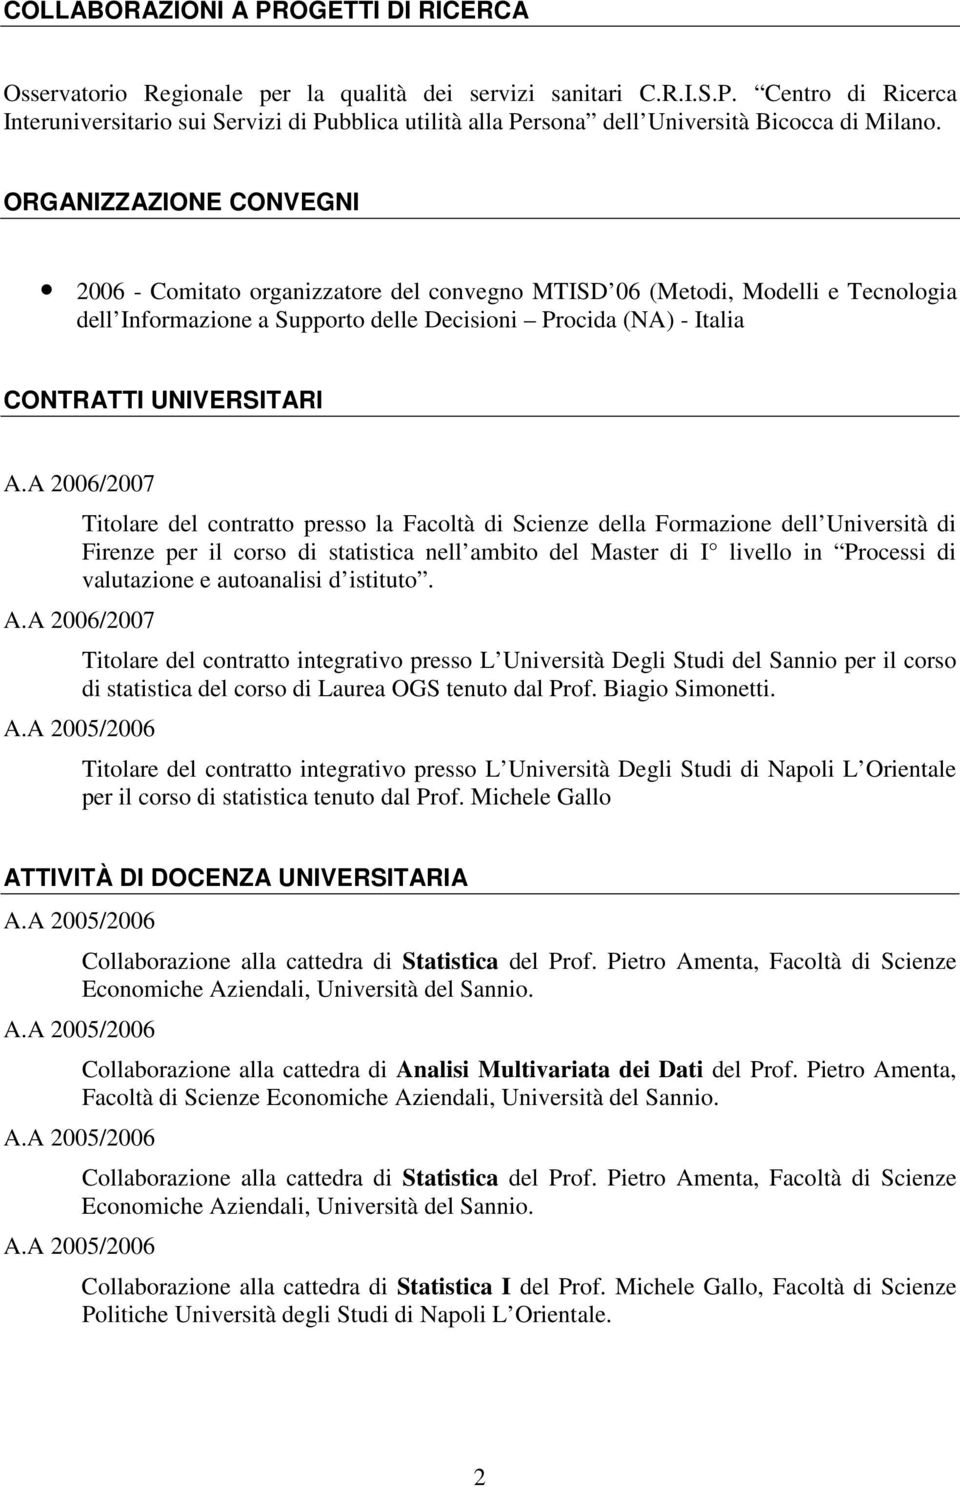 A 2006/2007 Titolare del contratto presso la Facoltà di Scienze della Formazione dell Università di Firenze per il corso di statistica nell ambito del Master di I livello in Processi di valutazione e